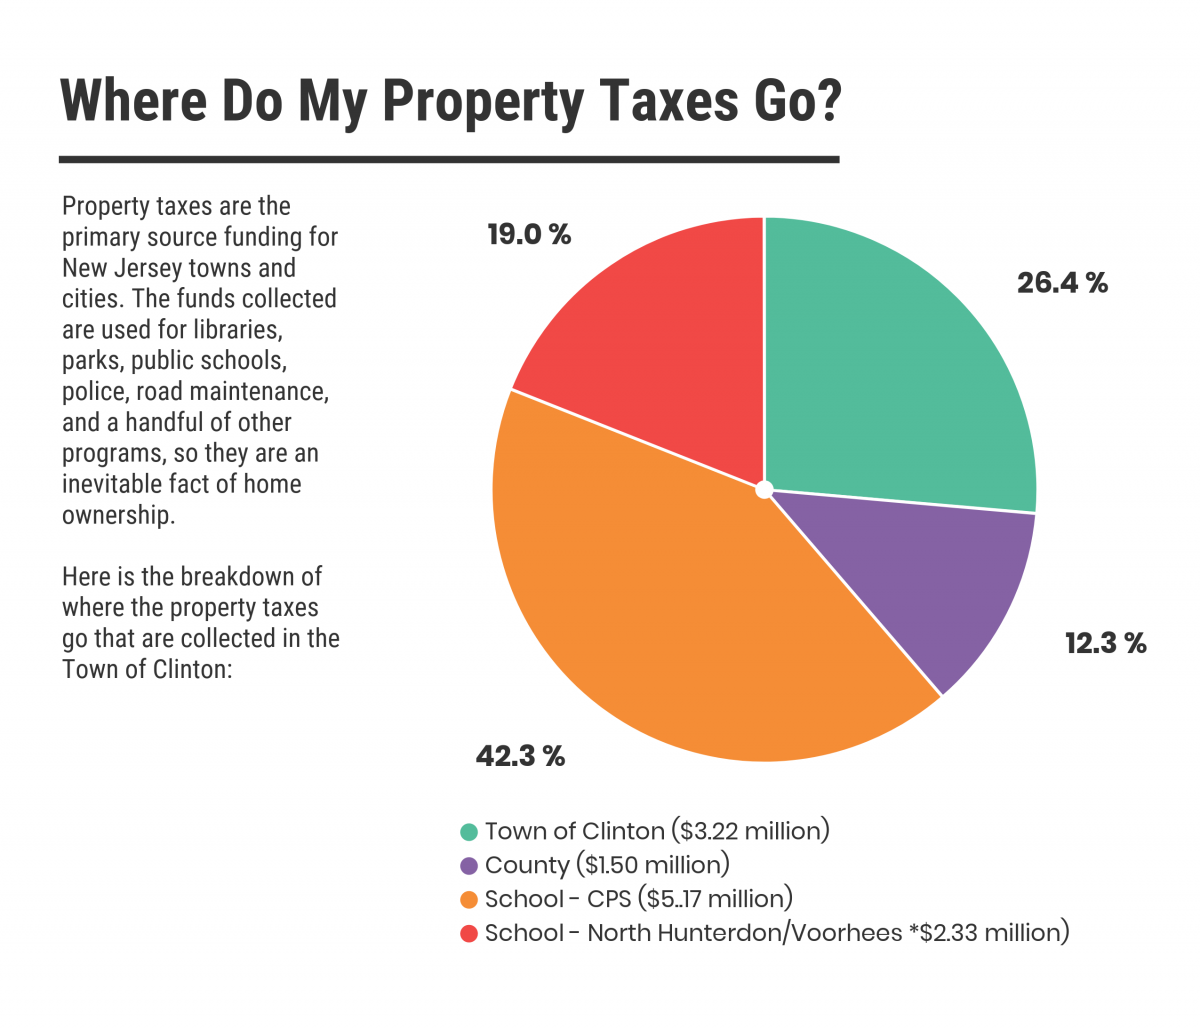 Where Do My Property Taxes Go?